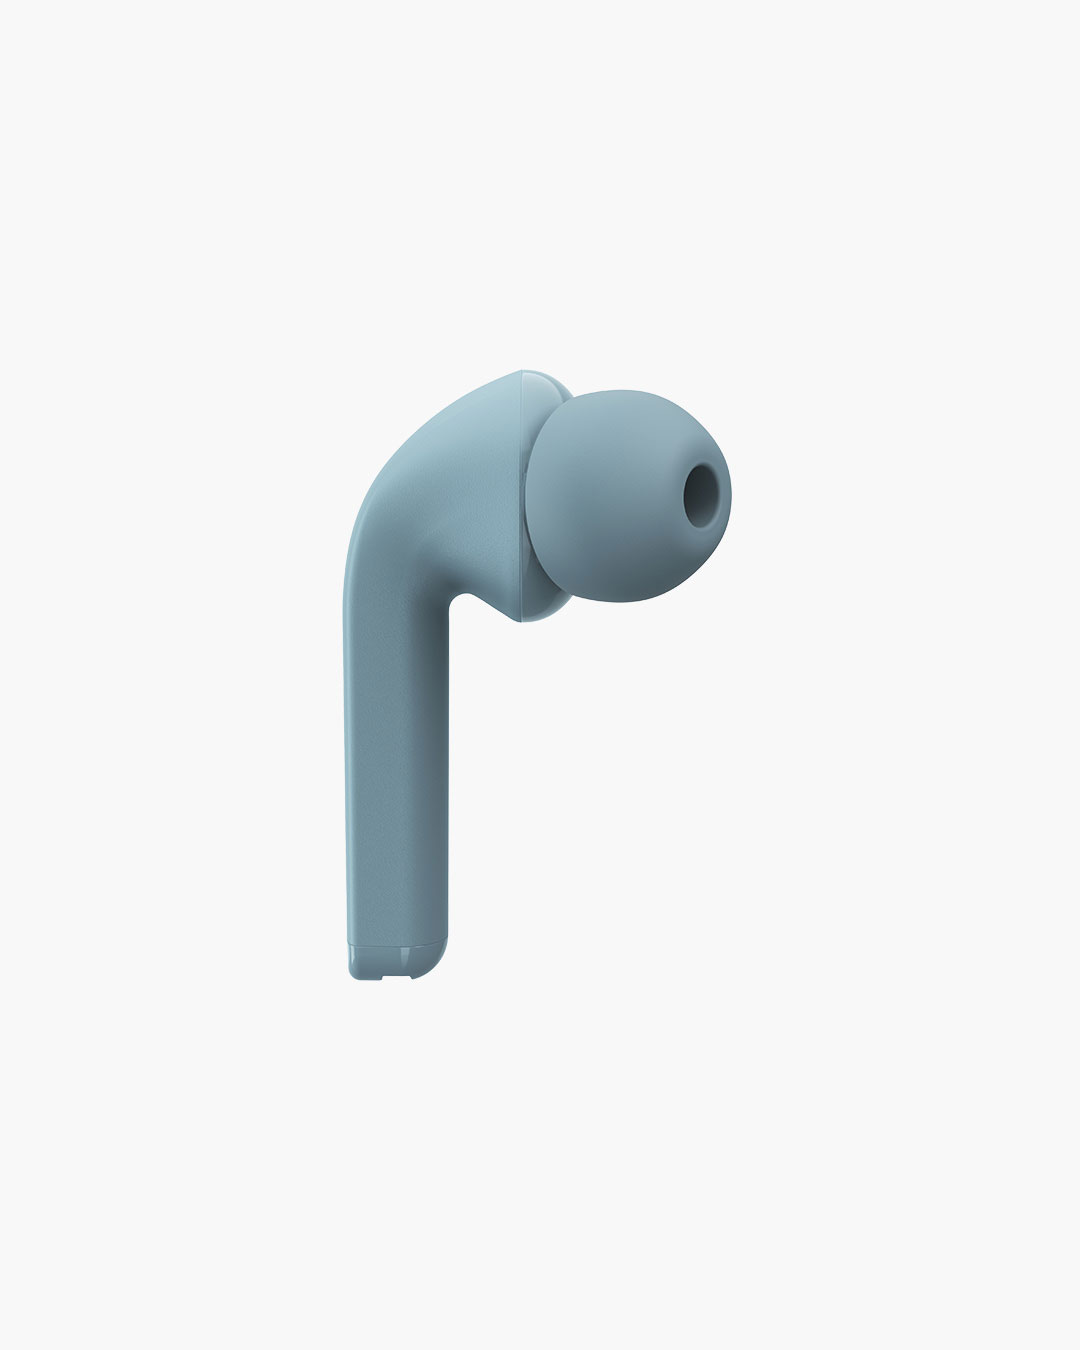 Fresh 'n Rebel - Twins 1 - True Wireless In-ear headphones with ear tip - Dusky Blue